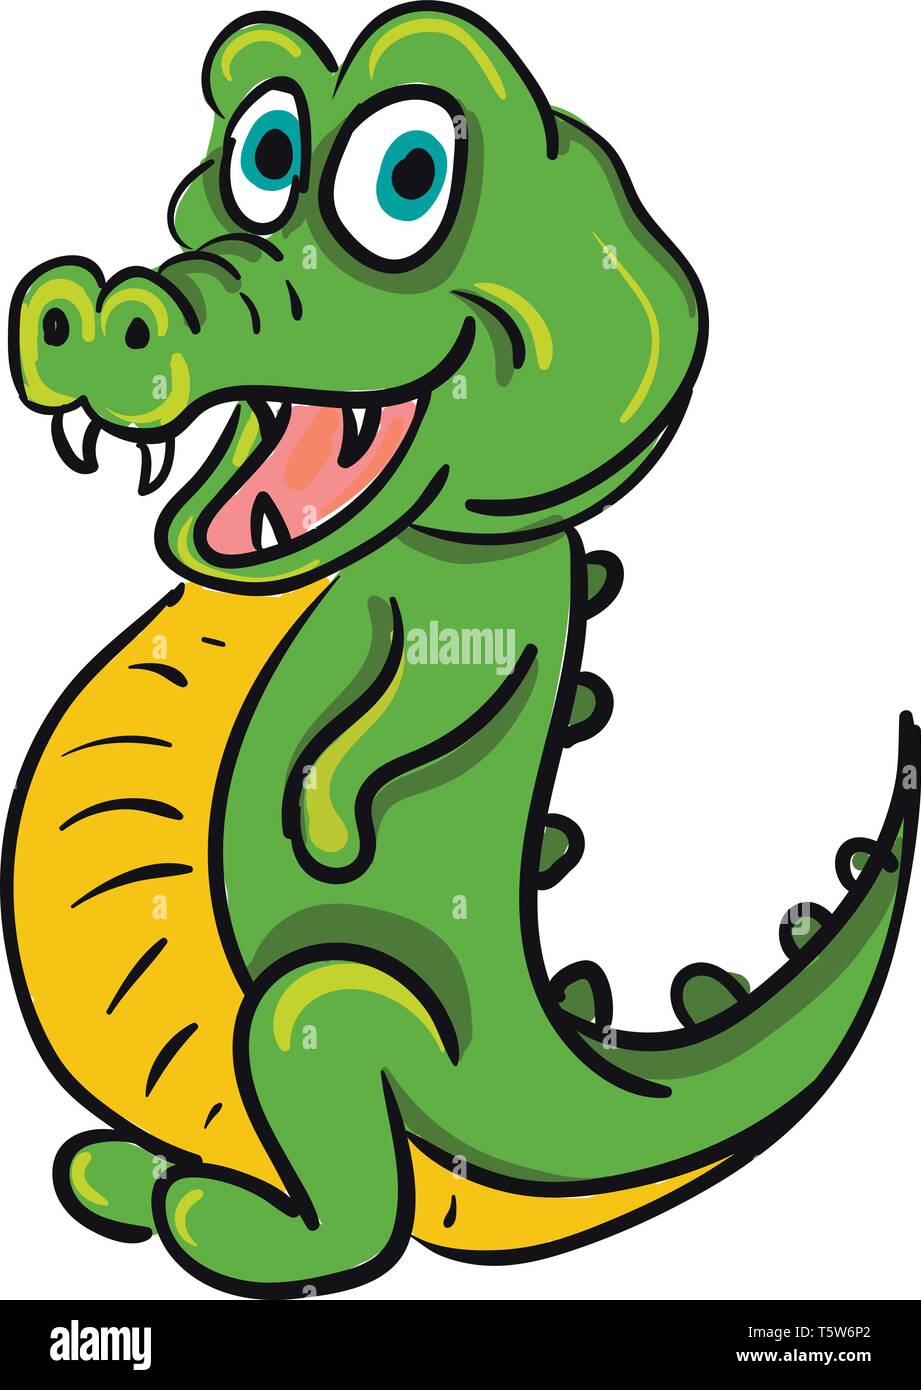 Eine grüne glücklich Krokodil mit großen blauen Augen, scharfe Zähne und einen gelben Bauch, Cartoon, Vector, Farbe, Zeichnung oder Abbildung. Stock Vektor